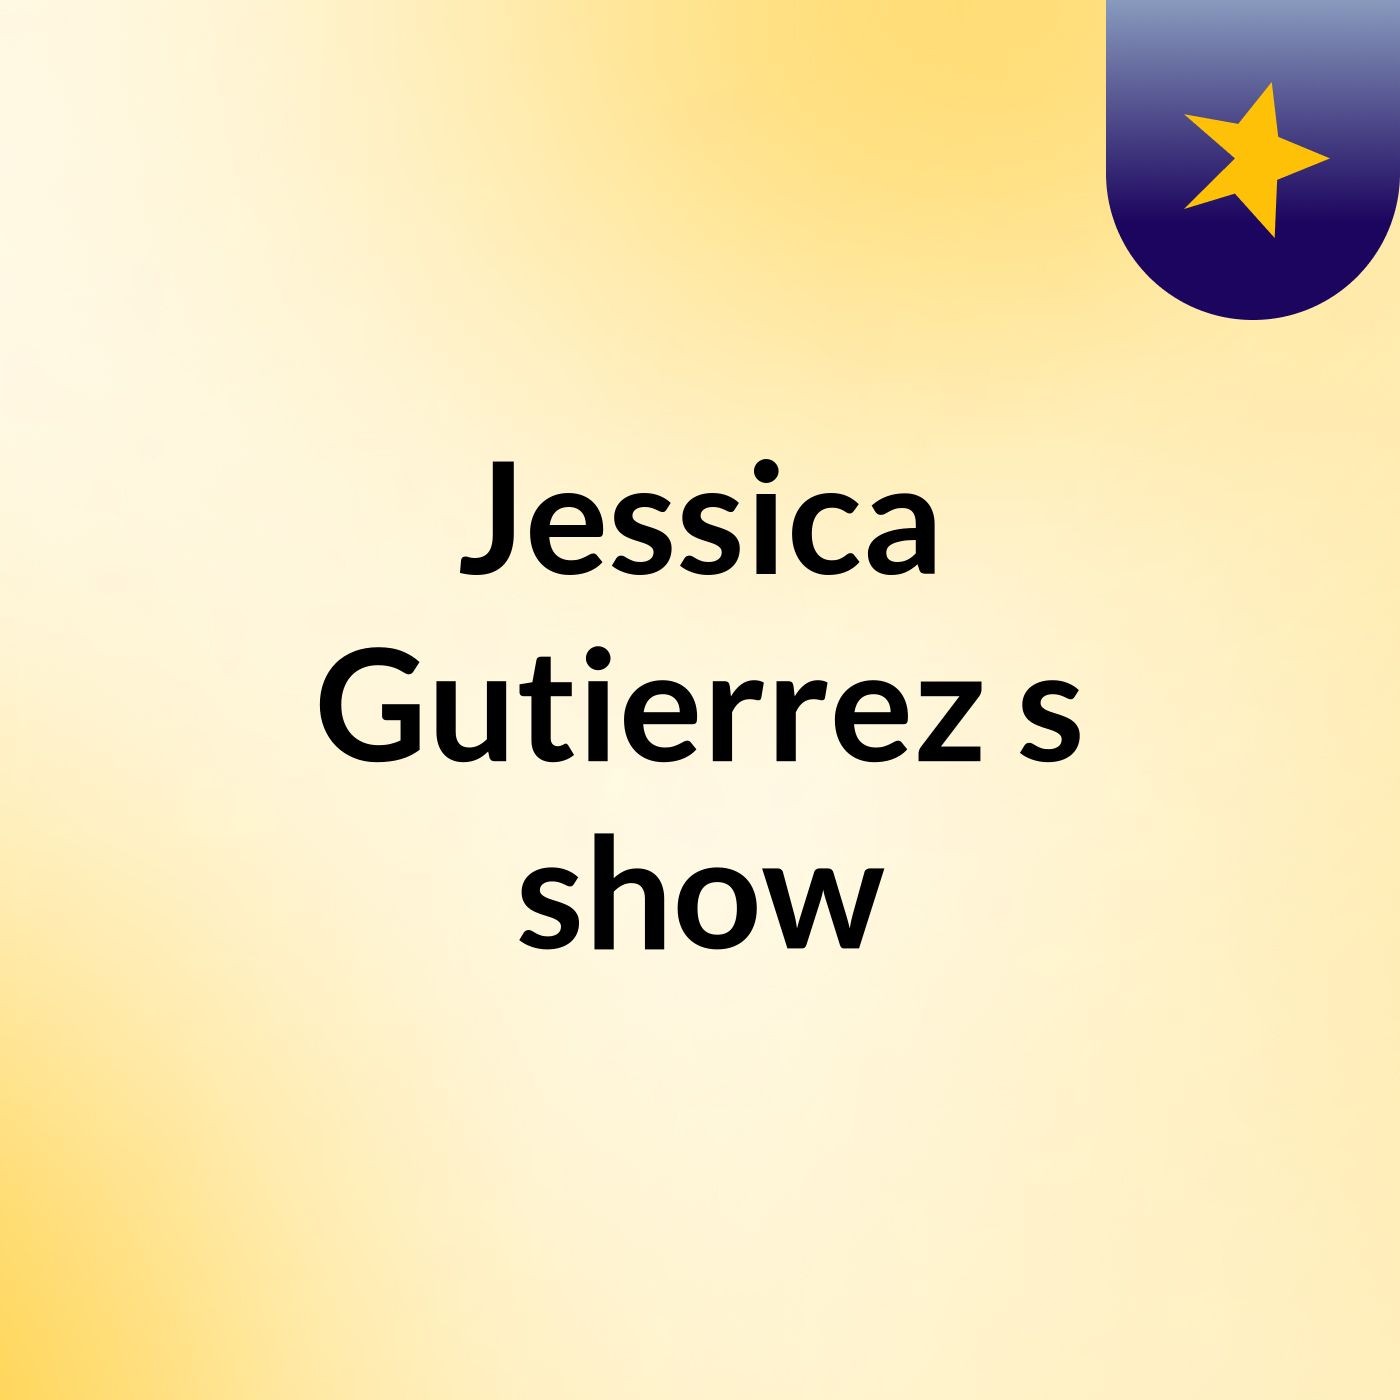 Jessica Gutierrez's show